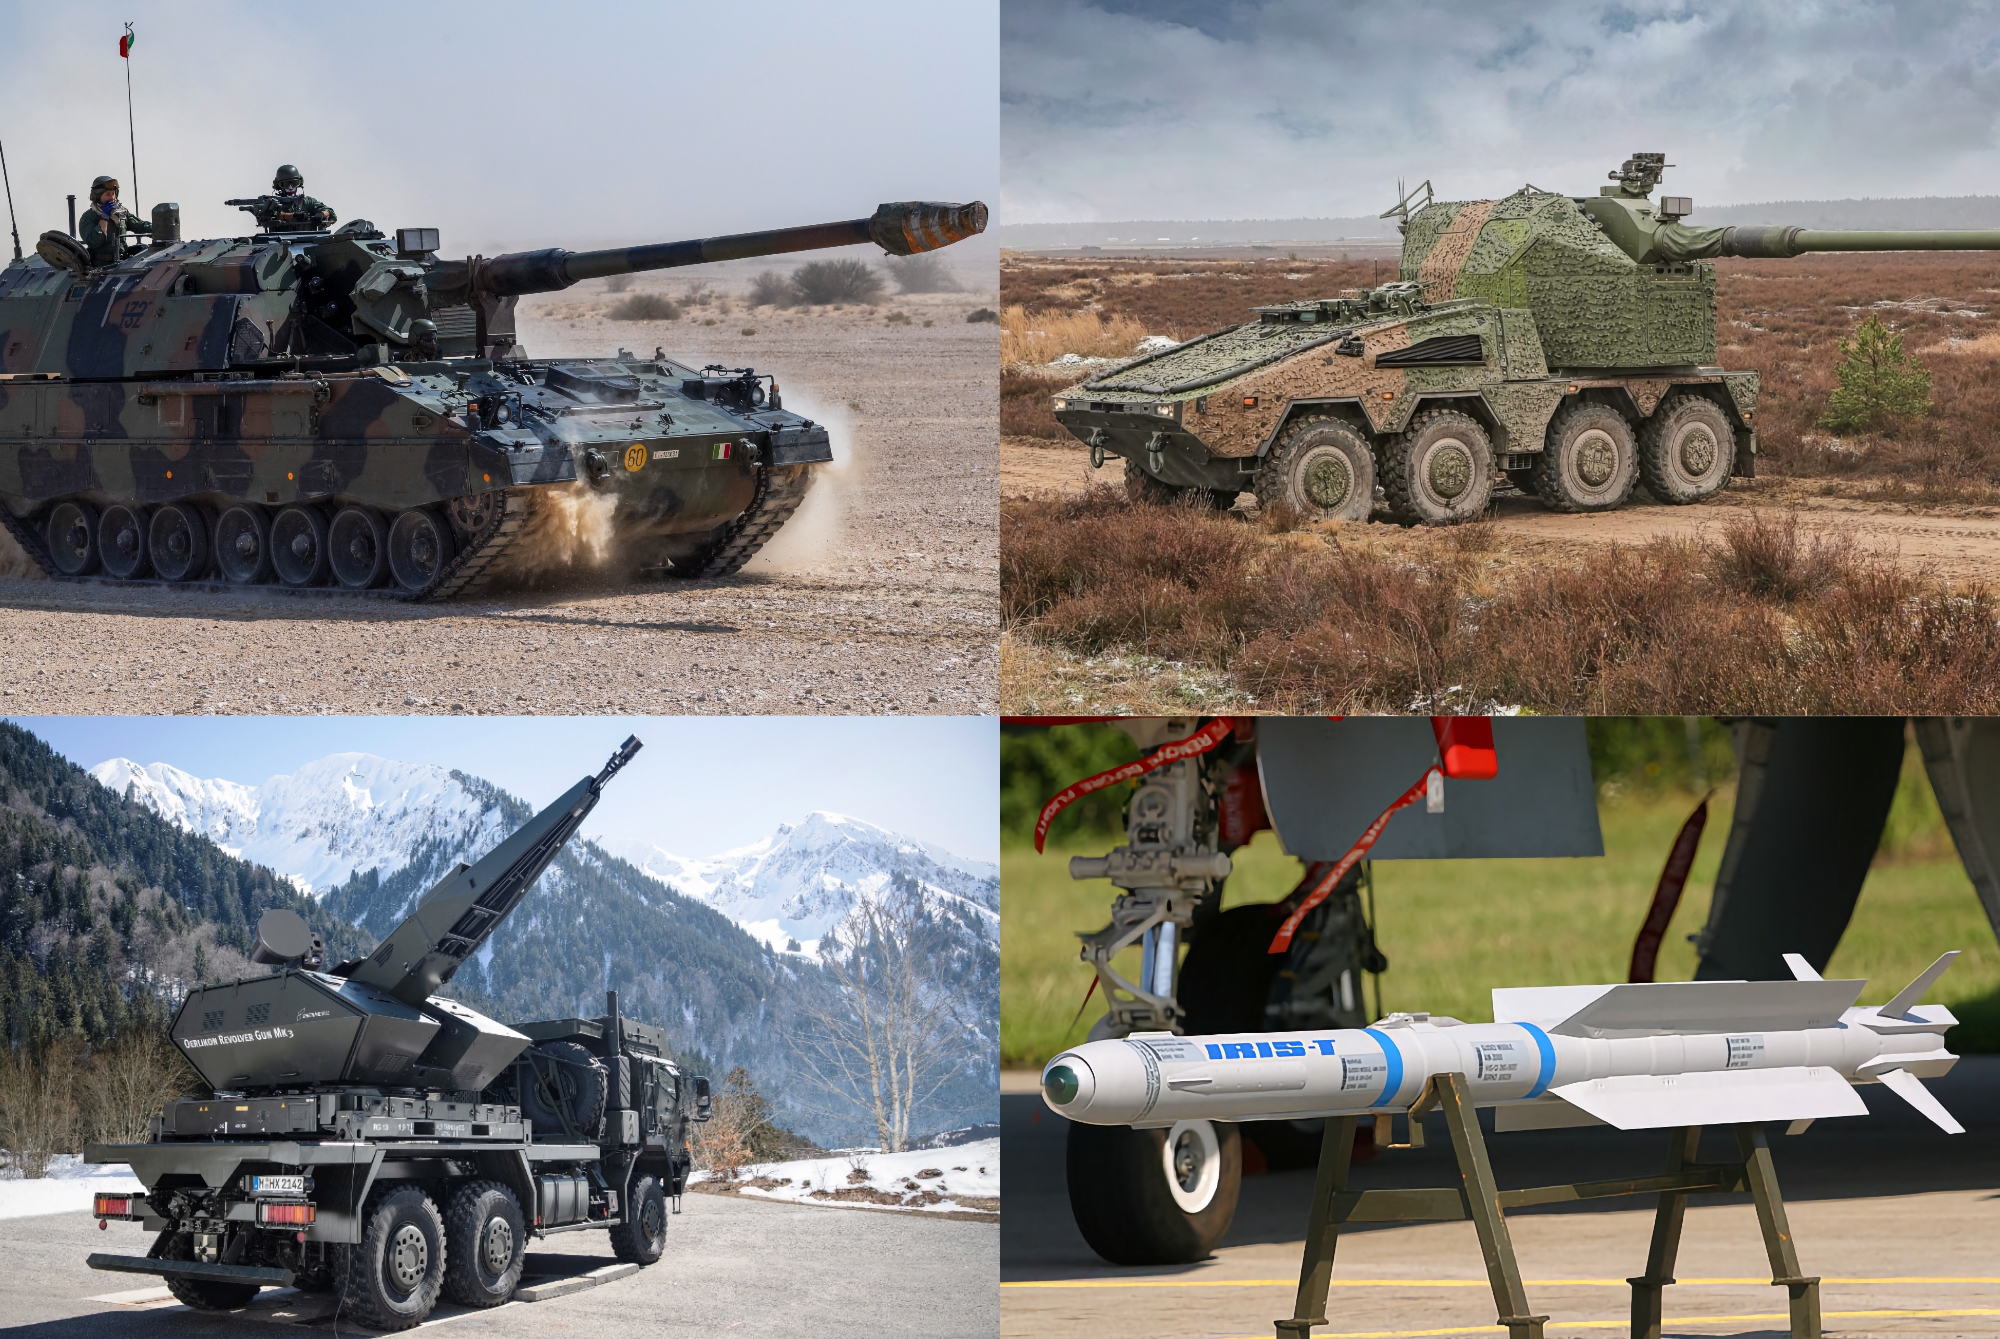 36 PzH 2000 artilleriesystemen, RCH 155, 100 raketten voor IRIS-T en 2 Skynex luchtafweersystemen: Duitsland heeft details onthuld van een nieuw militair hulppakket van 1,1 miljard euro voor de AFU.